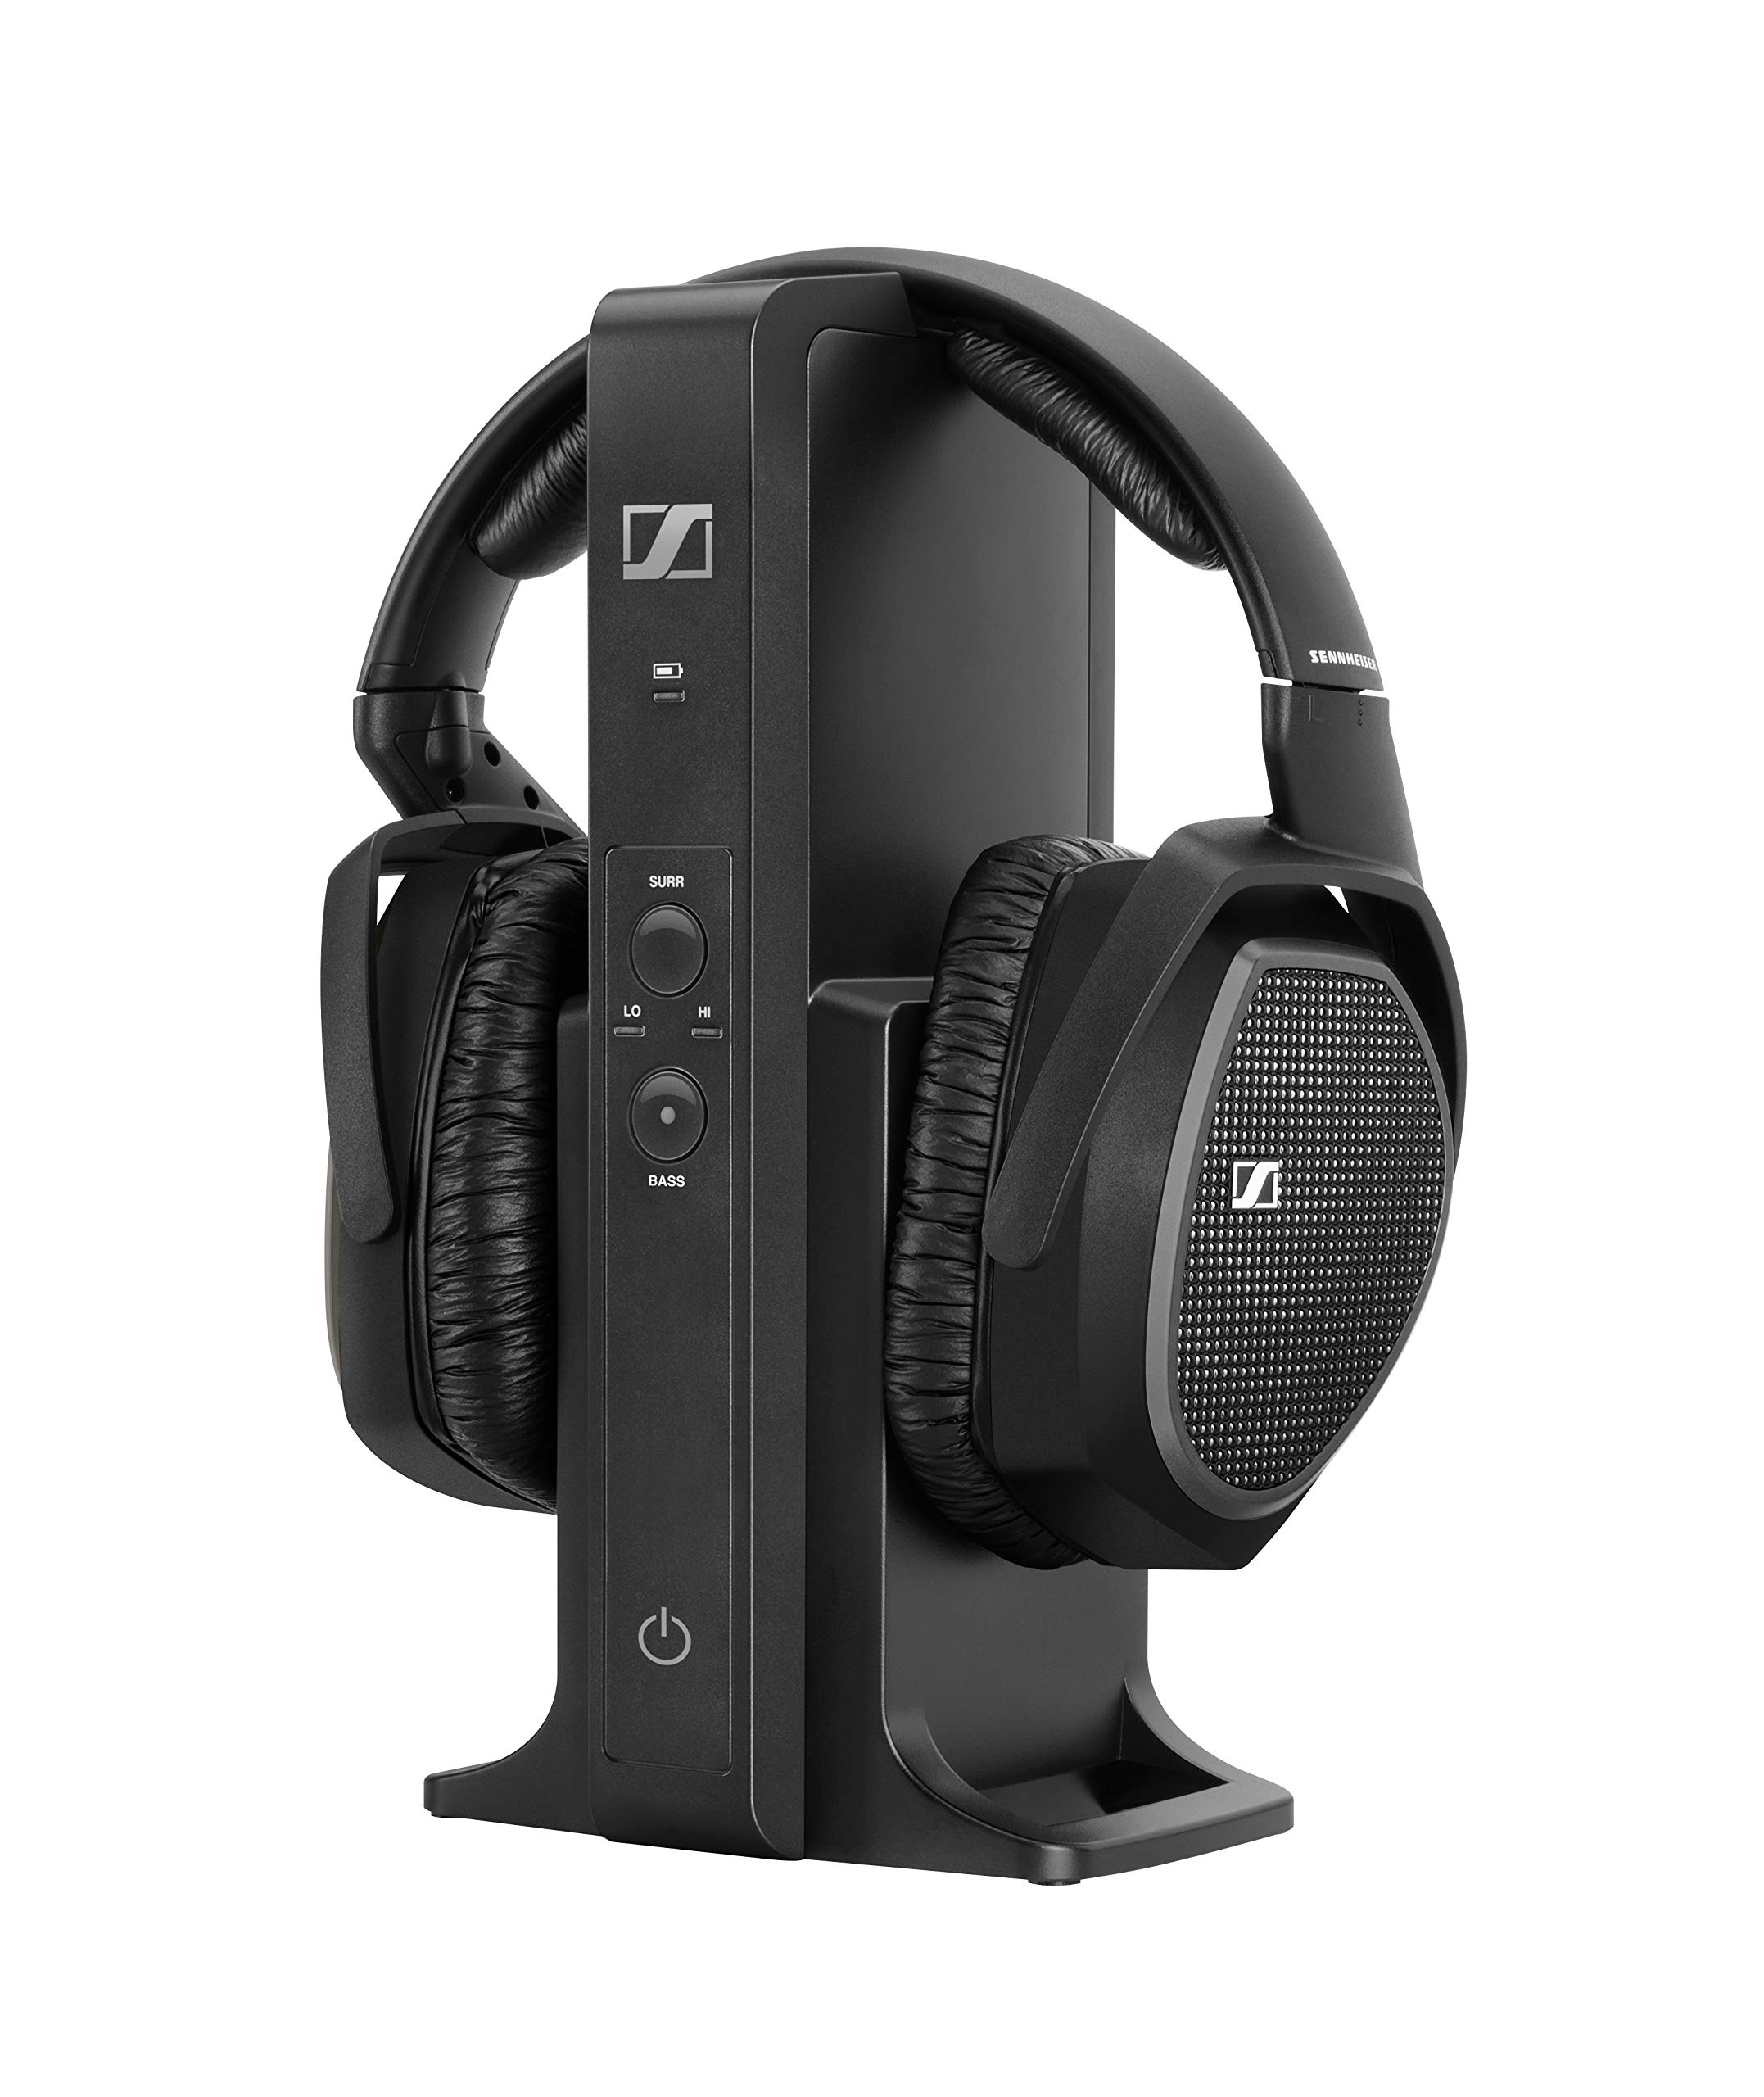 Sennheiser Consumer Audio Bezprzewodowy zestaw słuchawkowy RS 175 RF do słuchania telewizji z trybami wzmocnienia basów i dźwięku przestrzennego